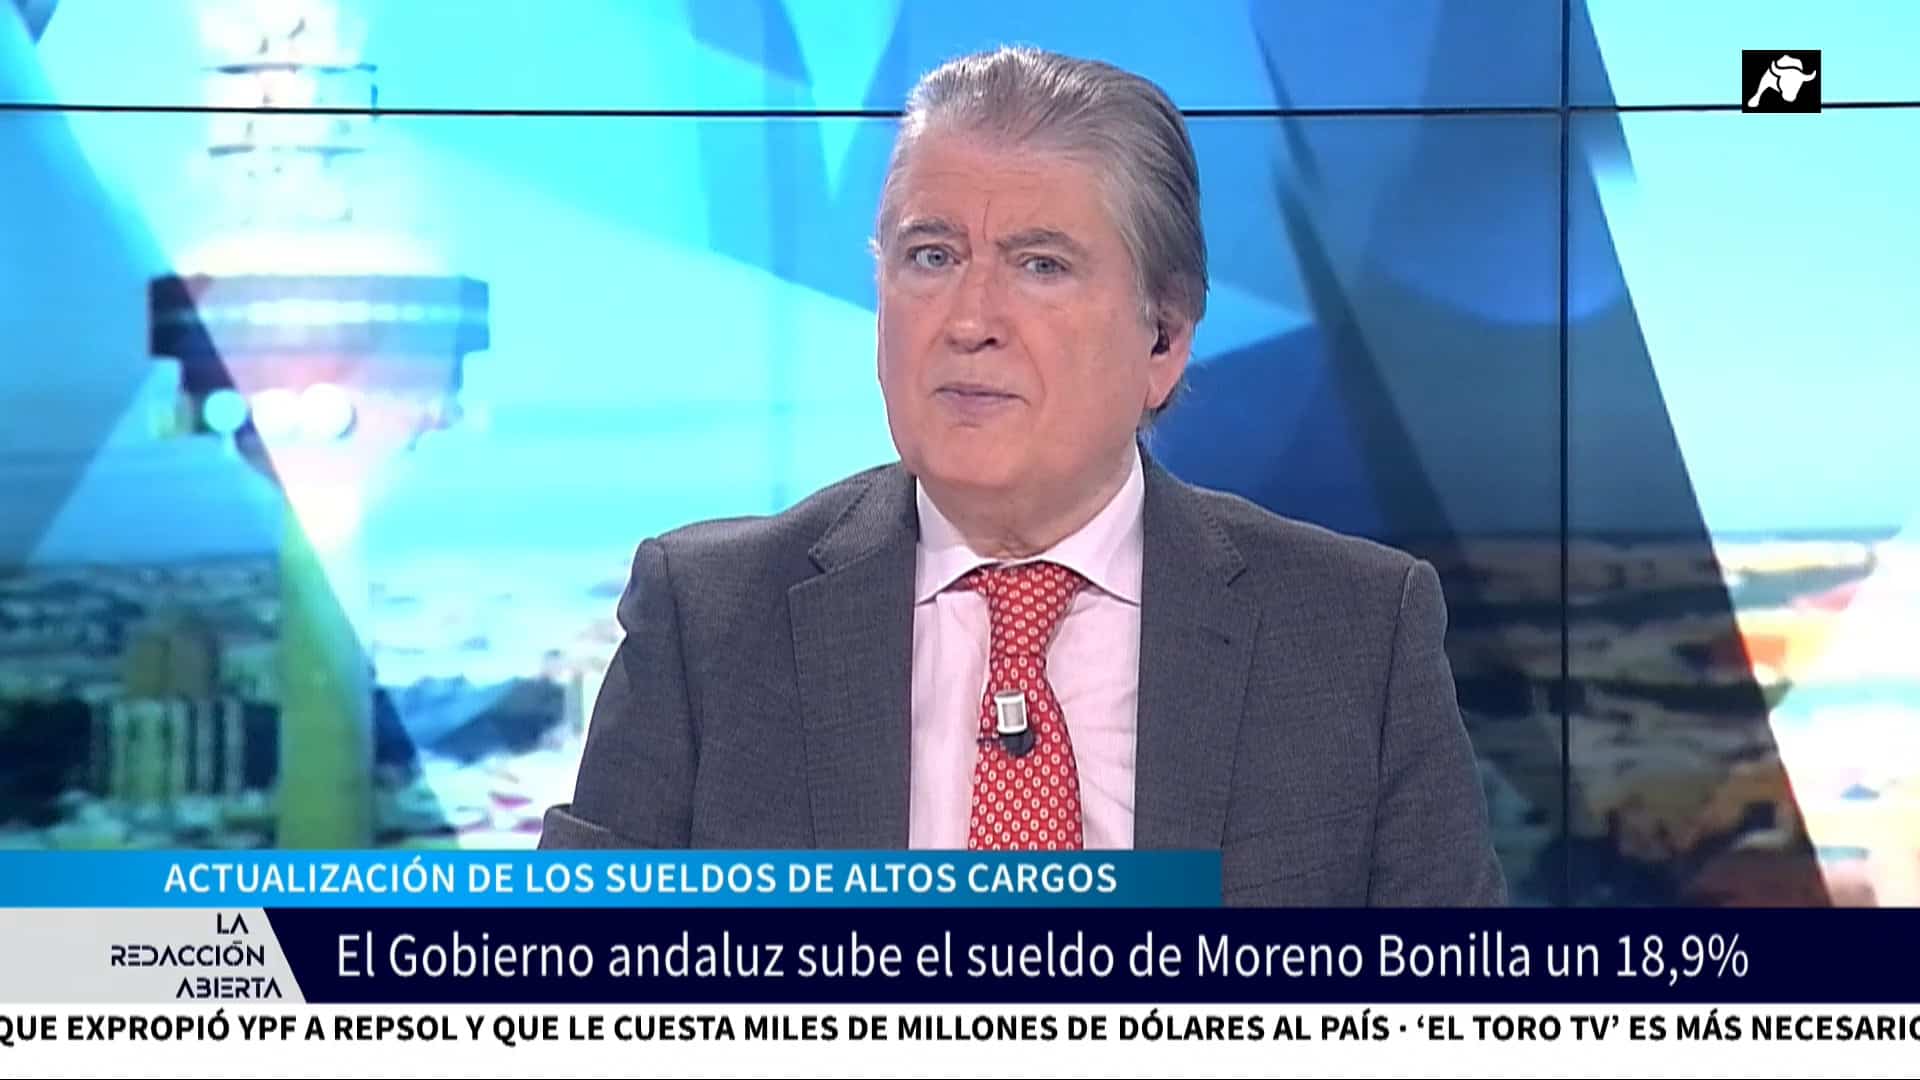 El generoso aumento de sueldo de Moreno Bonilla